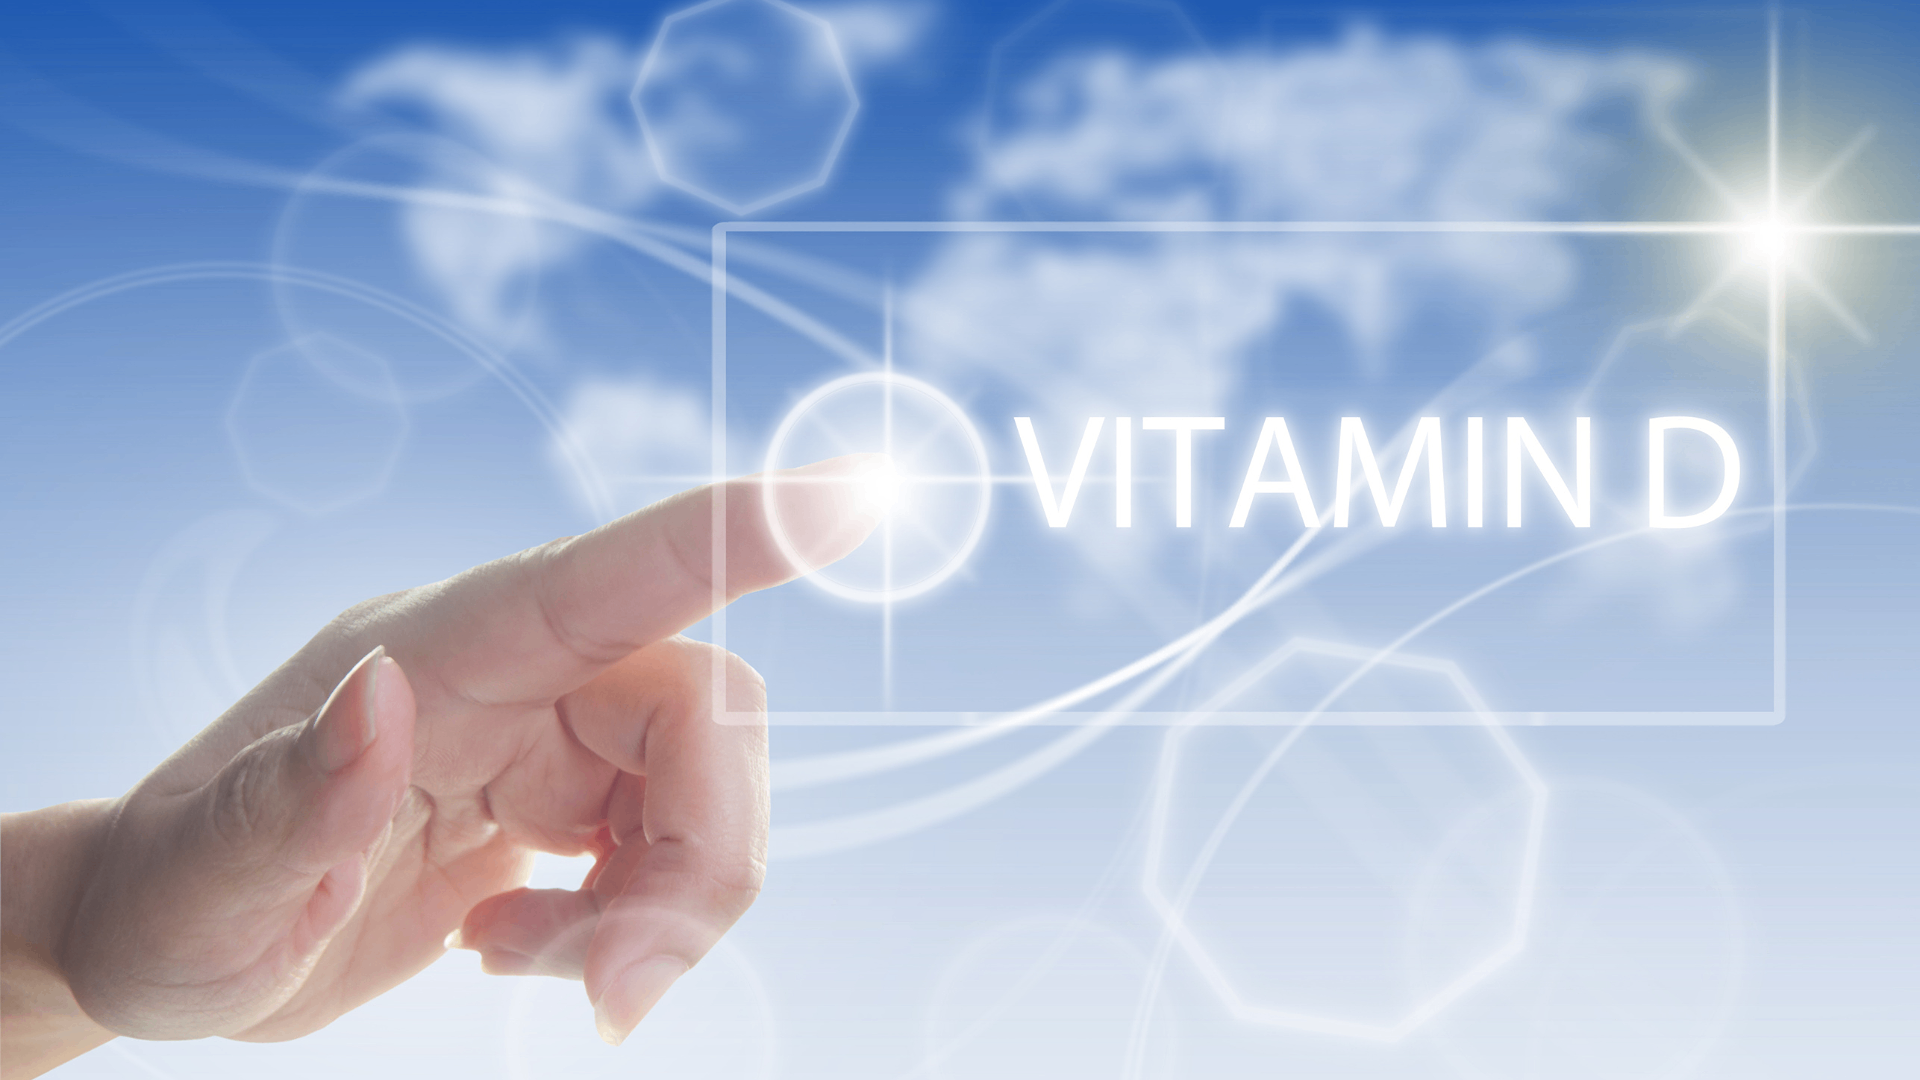 บริการทดสอบปริมาณสารวิตามินดี (Vitamin D) ในสมุนไพรหรือผลิตภัณฑ์